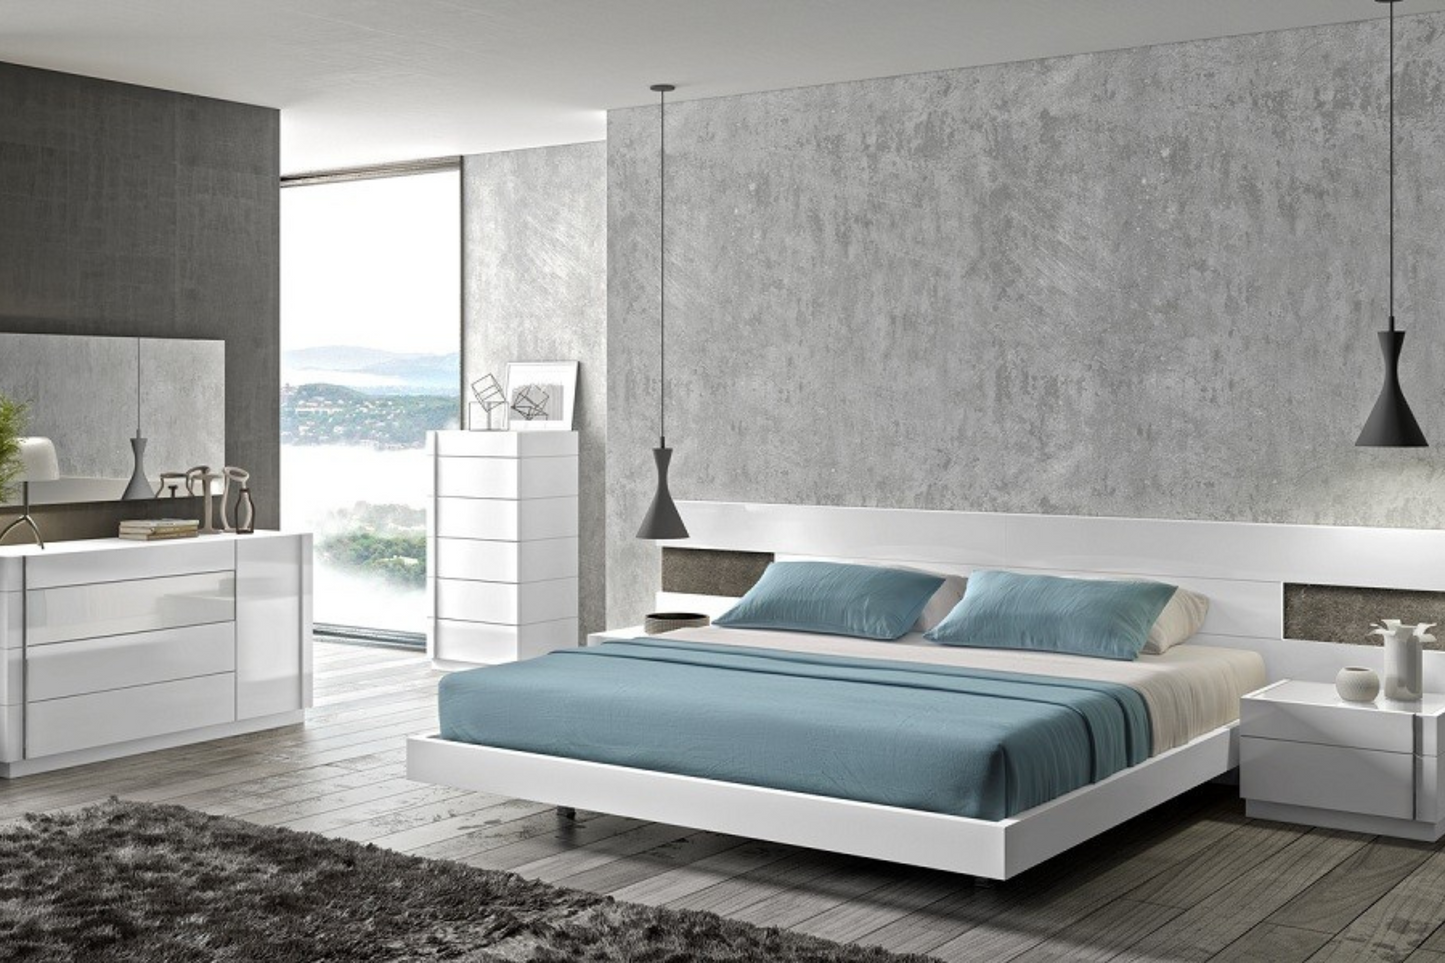 Amora Premium Bedroom Bed SKU: 17869